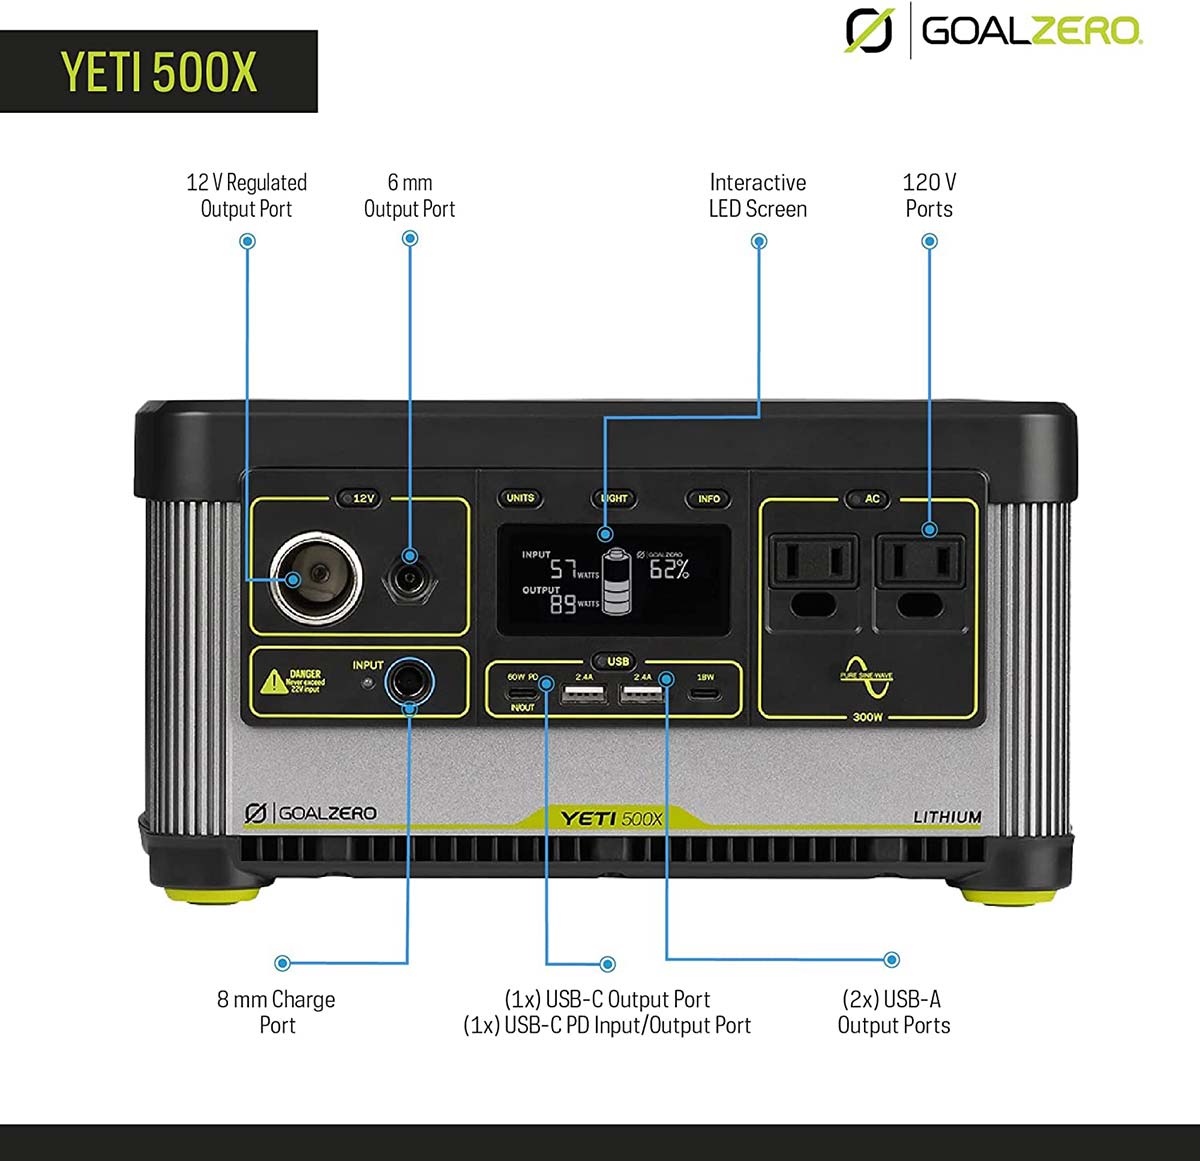 Goal Zero Yeti 500x Overview